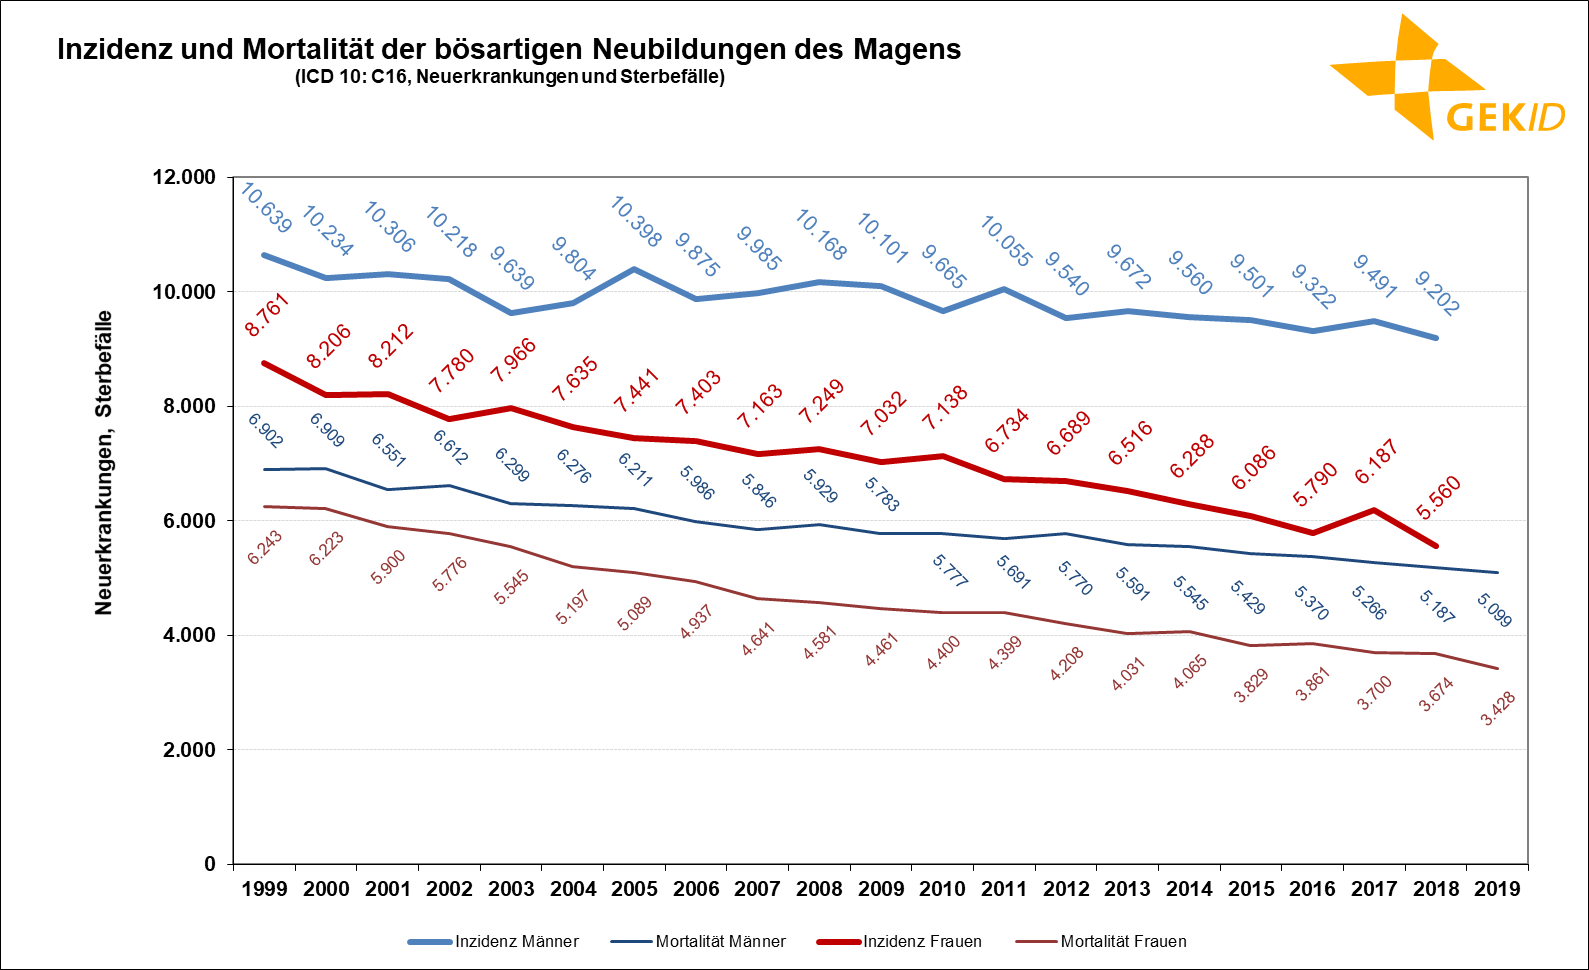 Geschätzte Inzidenz des Magenkrebses (ICD 10: C16) in Deutschland – Fallzahlen 1